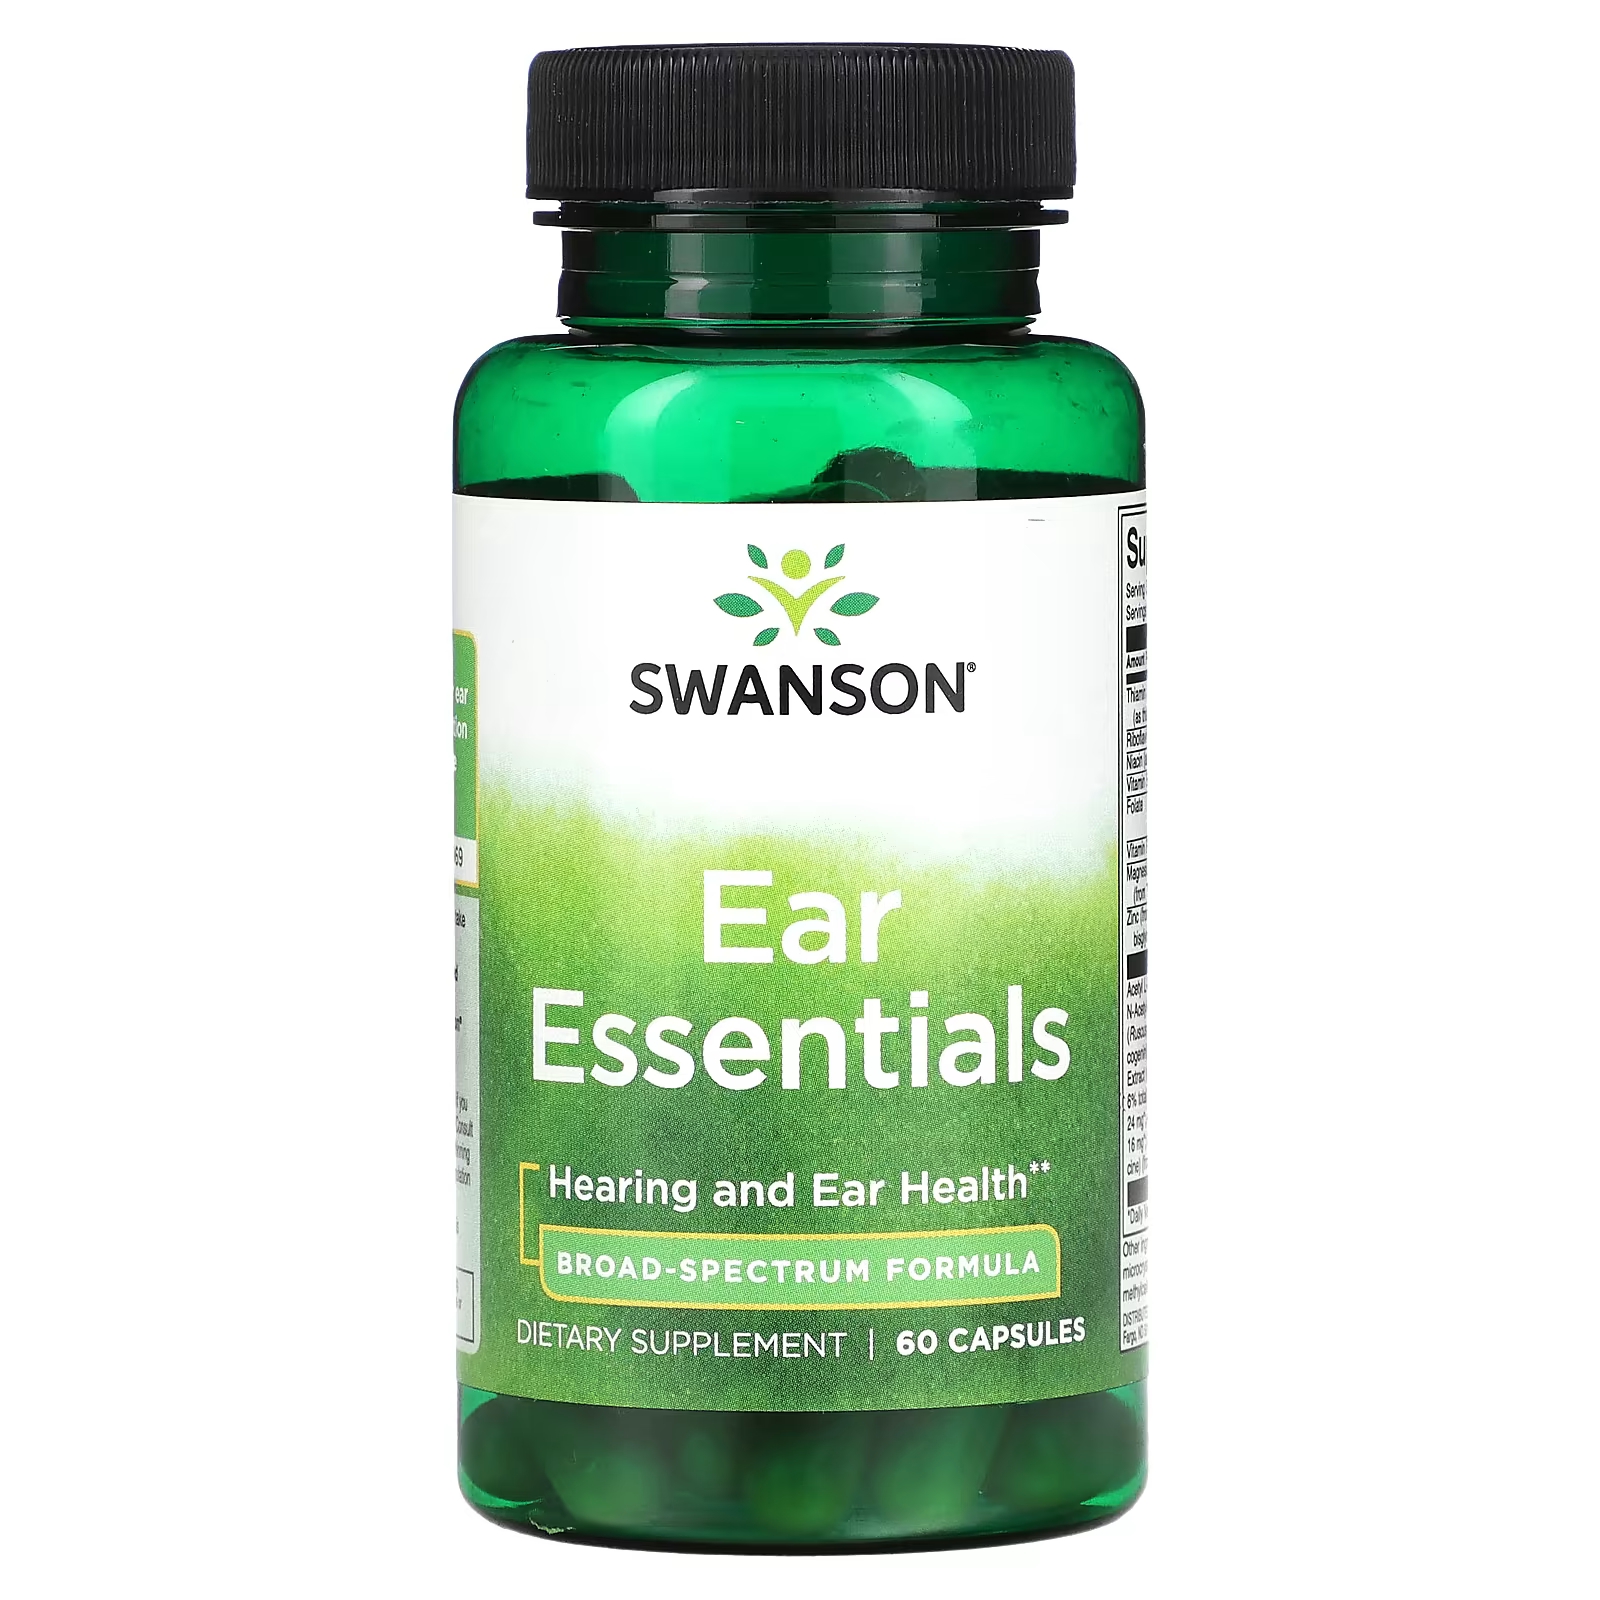 Пищевая добавка Swanson Ear Essentials, 60 капсул пищевая добавка swanson коллаген 60 капсул